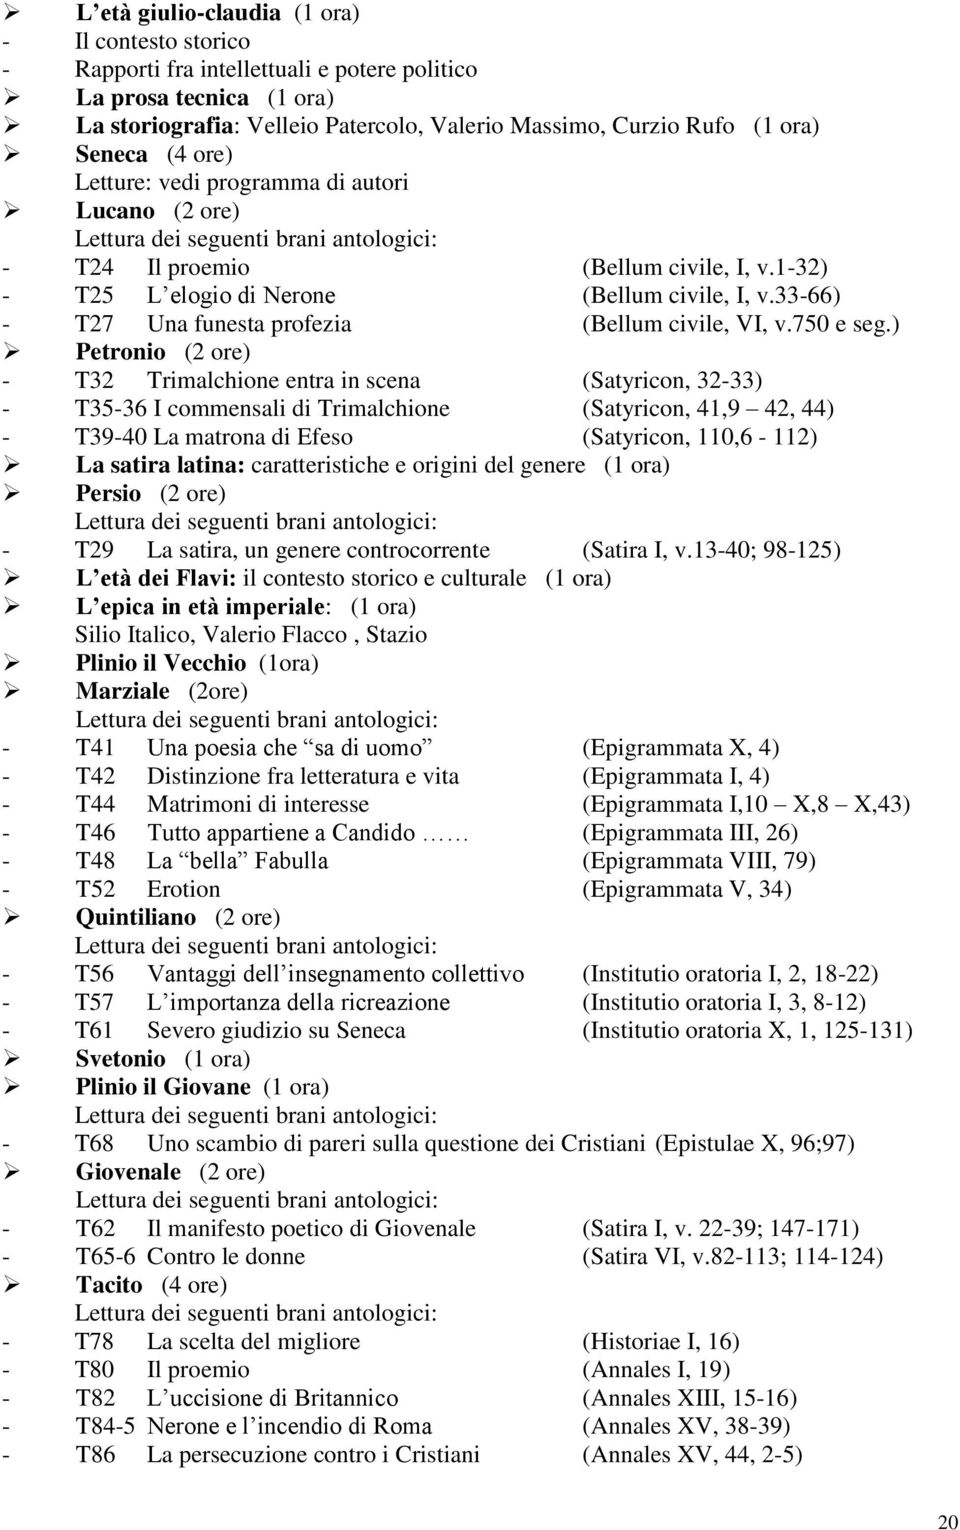 33-66) - T27 Una funesta profezia (Bellum civile, VI, v.750 e seg.